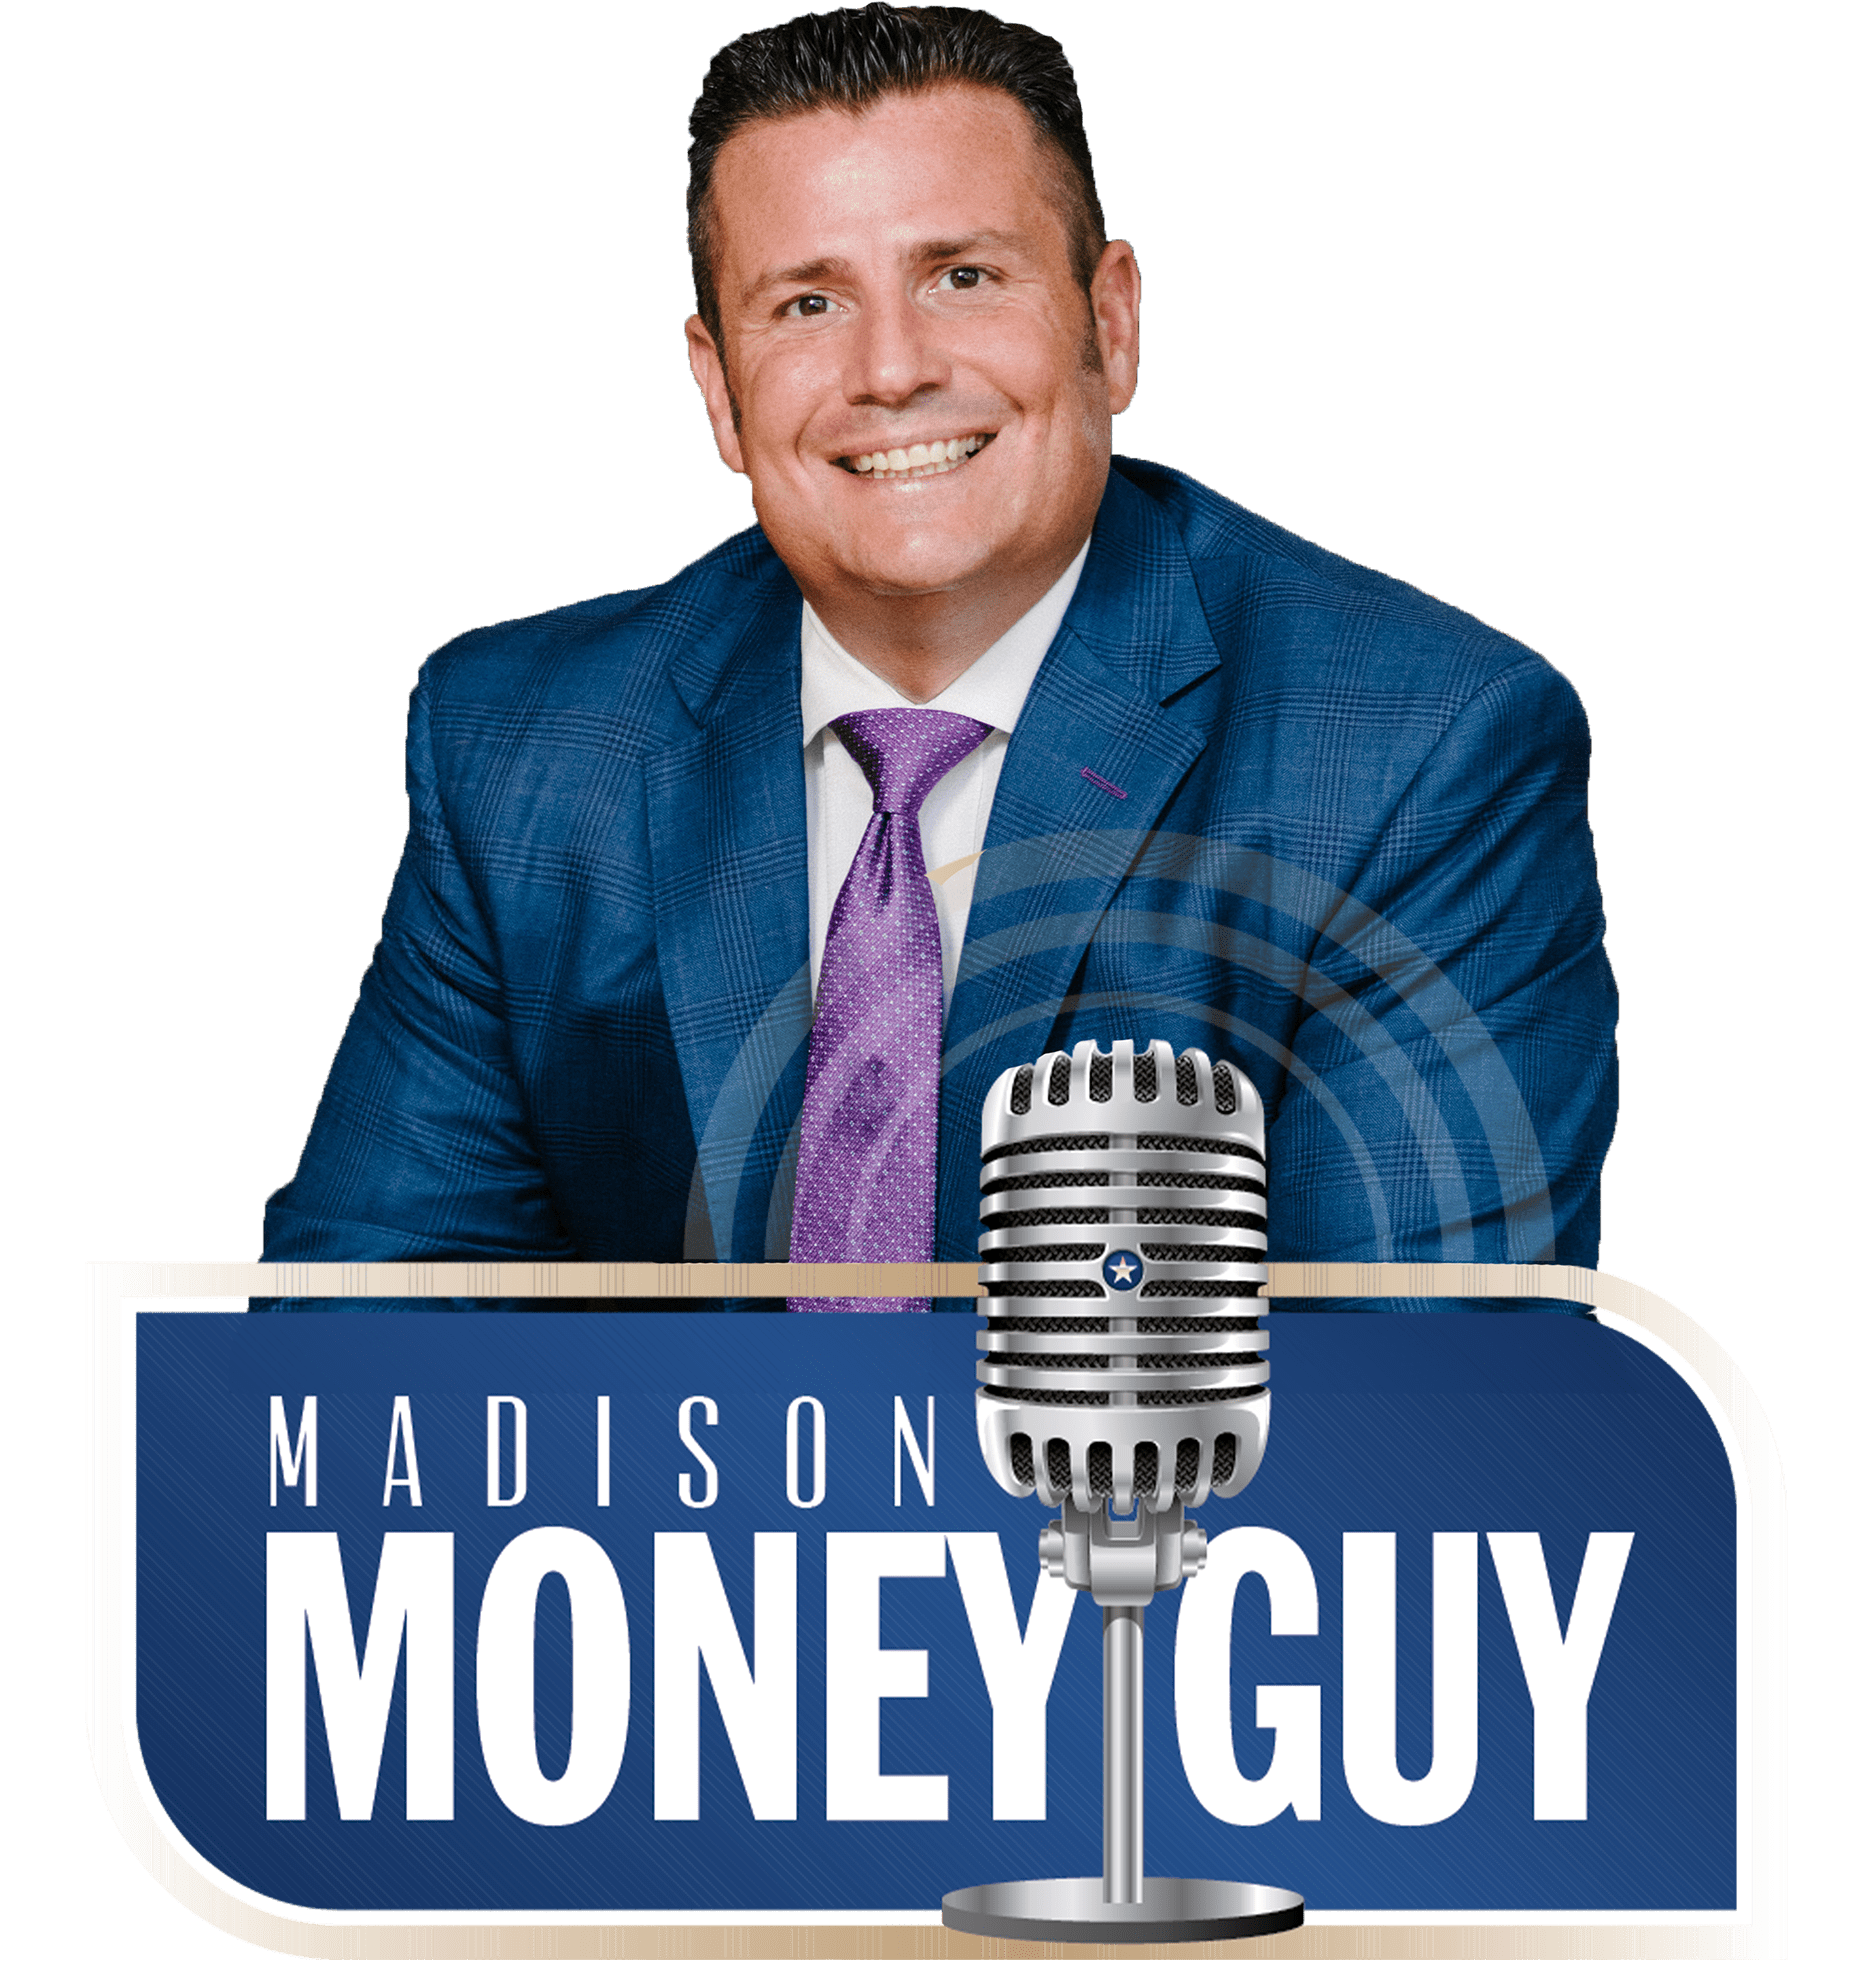 madison-money-guy4